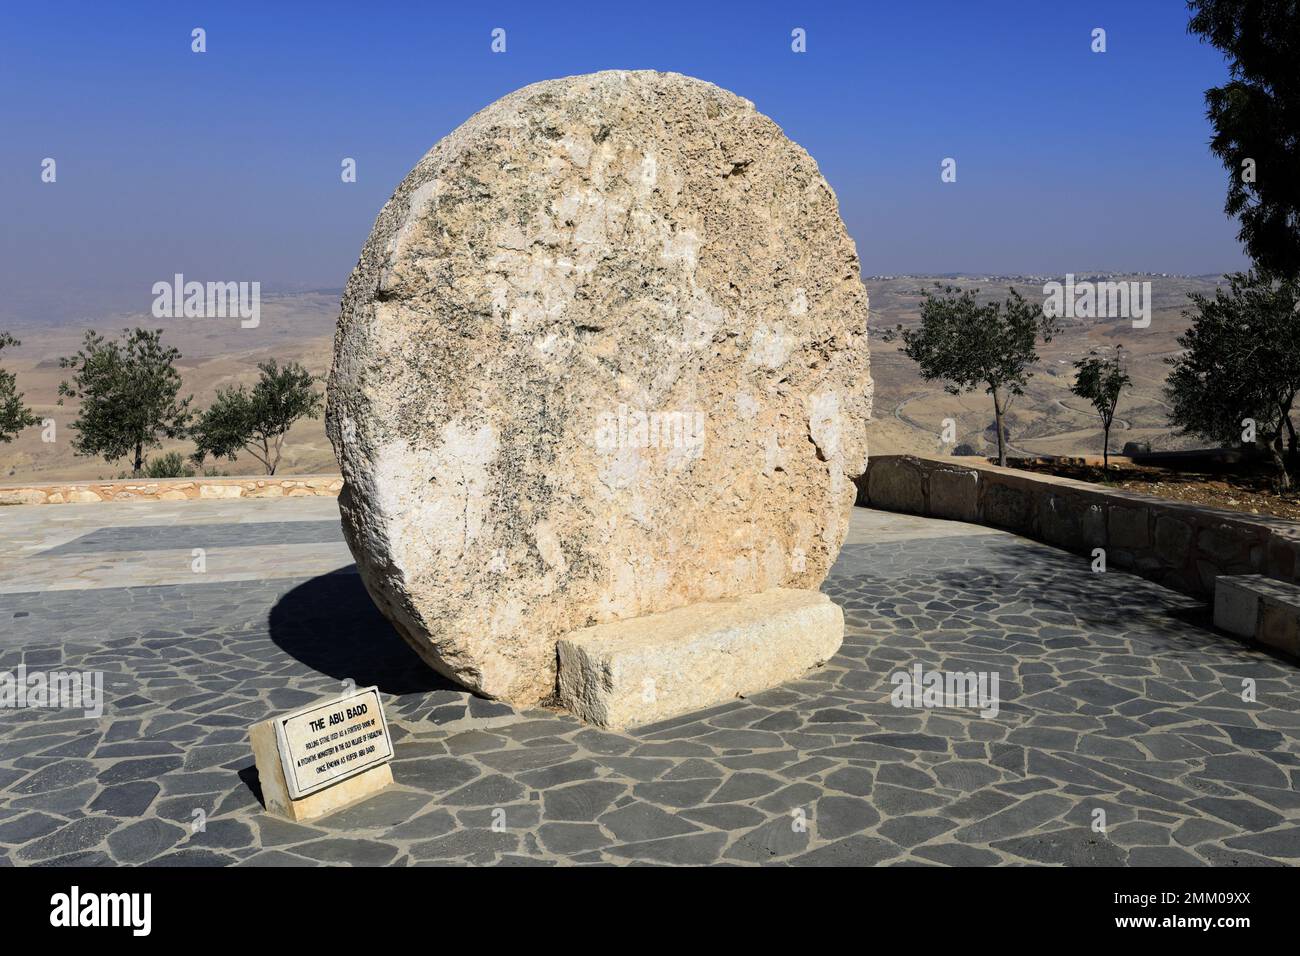 La pierre d'Abou Badd, porte fortifiée d'un monastère byzantin dans le vieux village de Faysaliyah, Mont Nebo, Jordanie, Moyen-Orient Banque D'Images